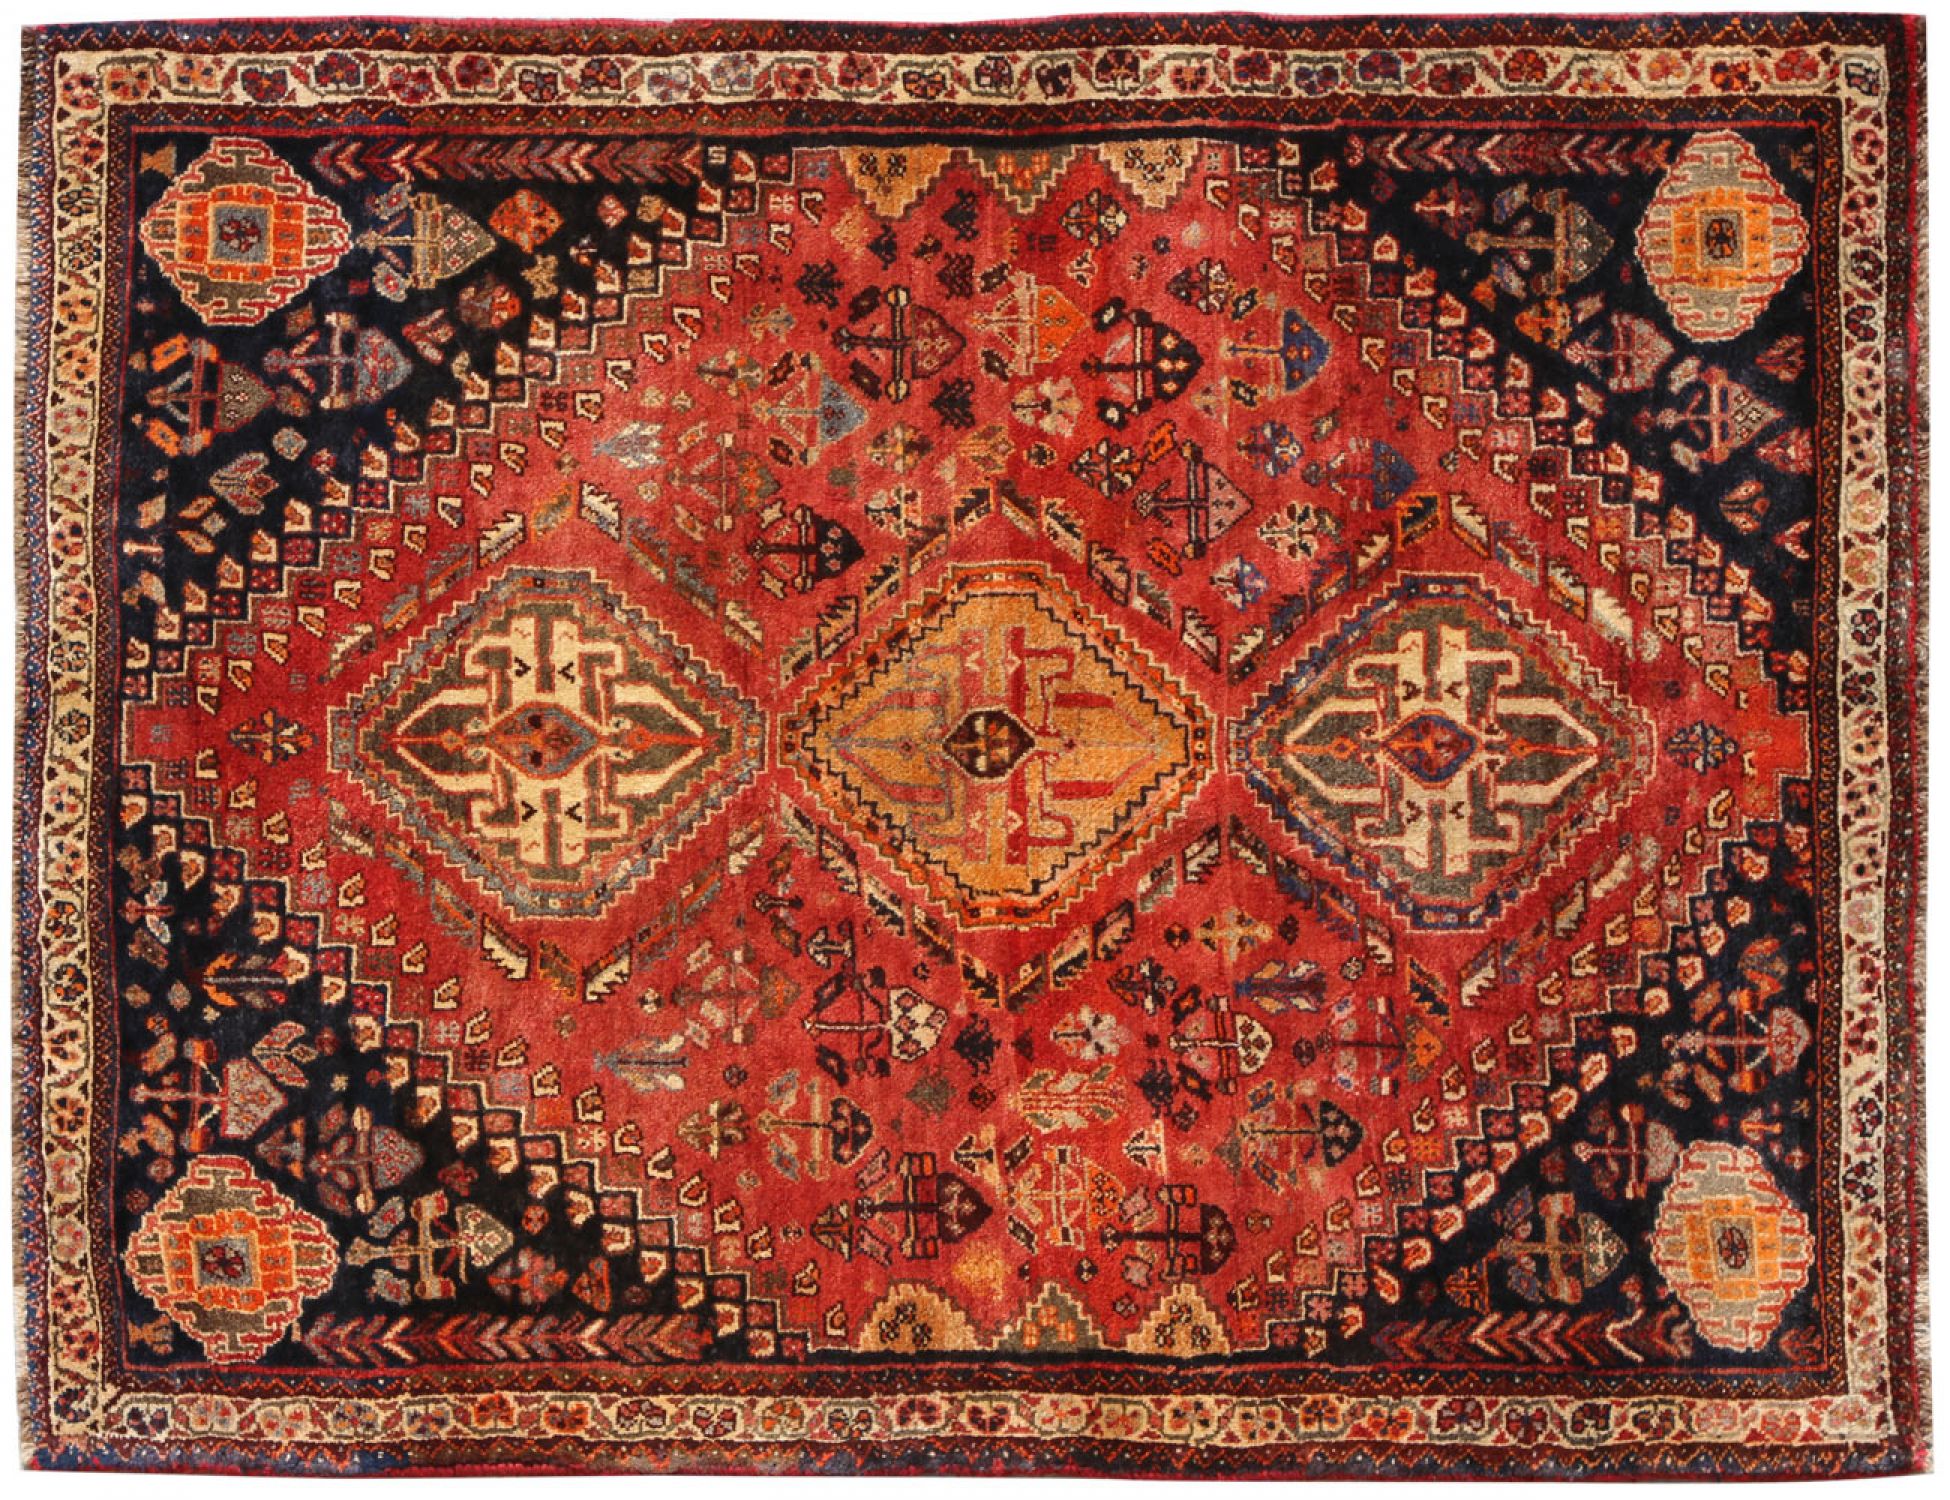  Περσικό Χαλί  Κόκκινο <br/>173 x 118 cm